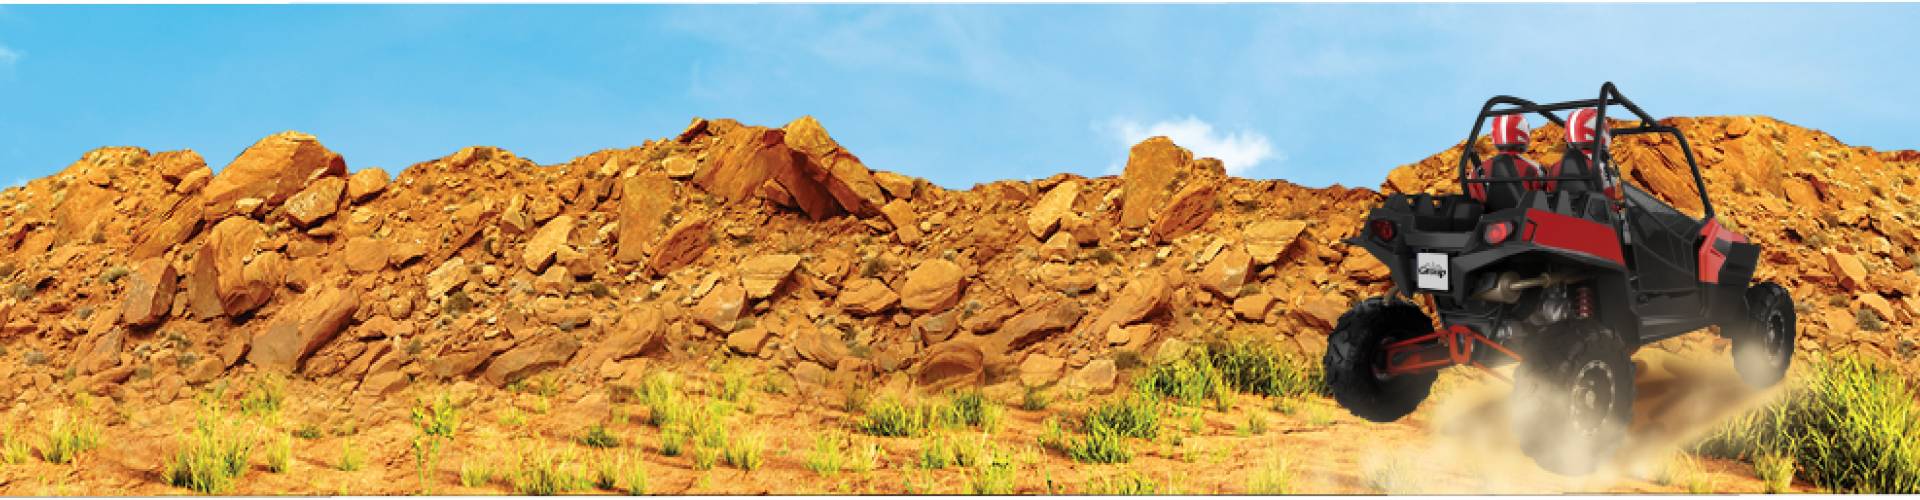 rocky desert hillside with dune buggy